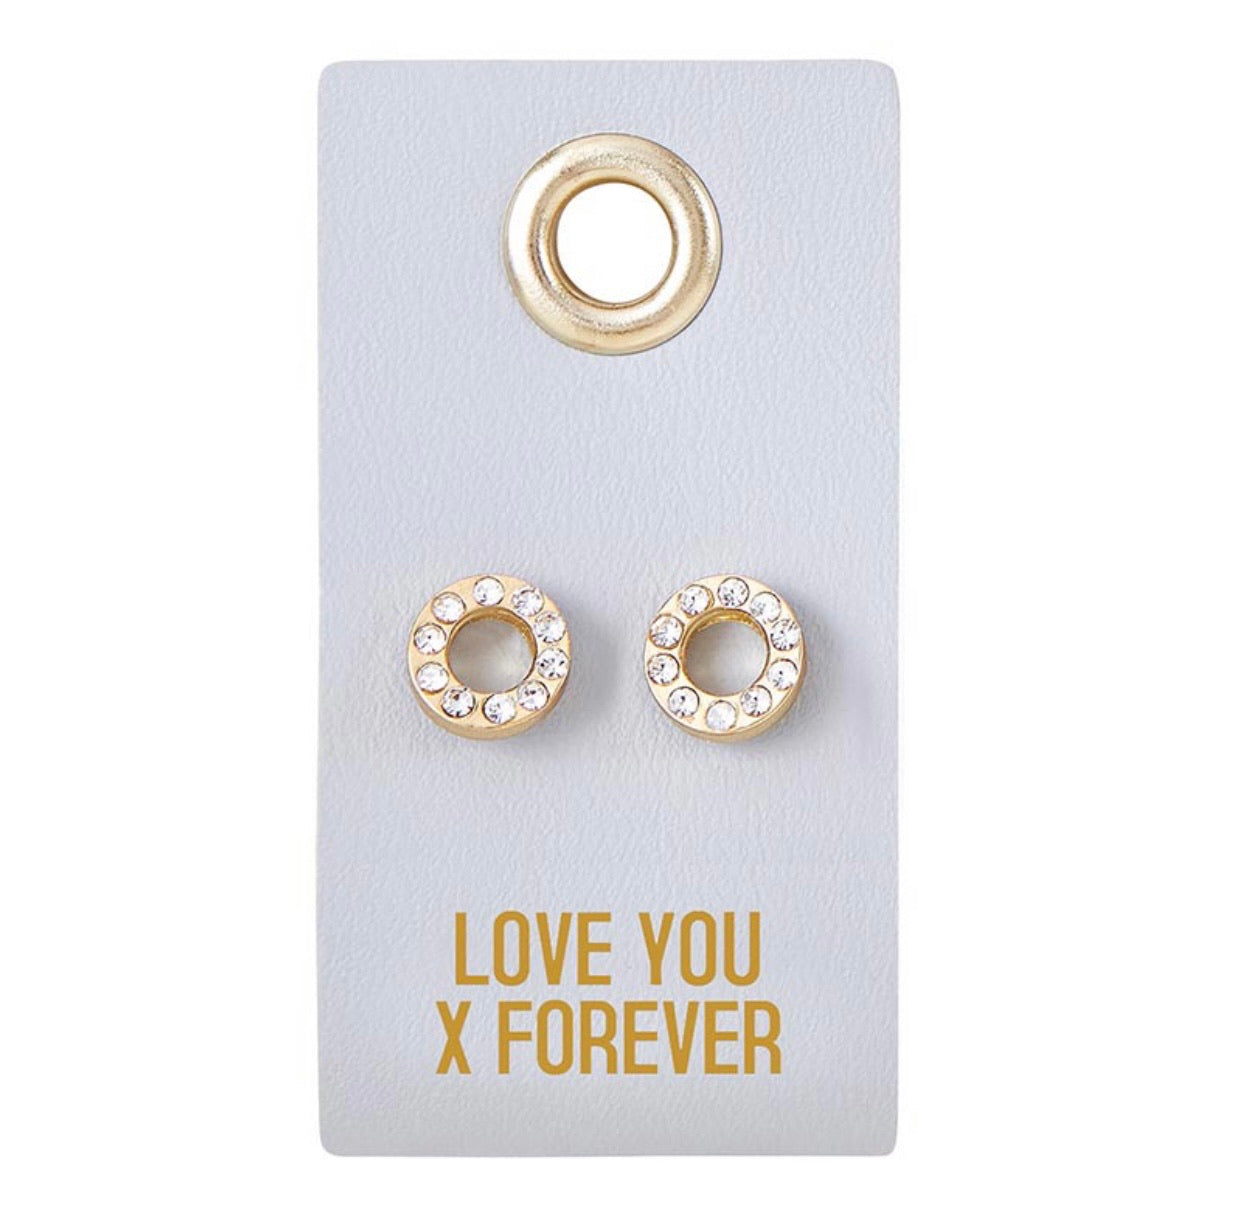 Love You Forever - Stud Earrings